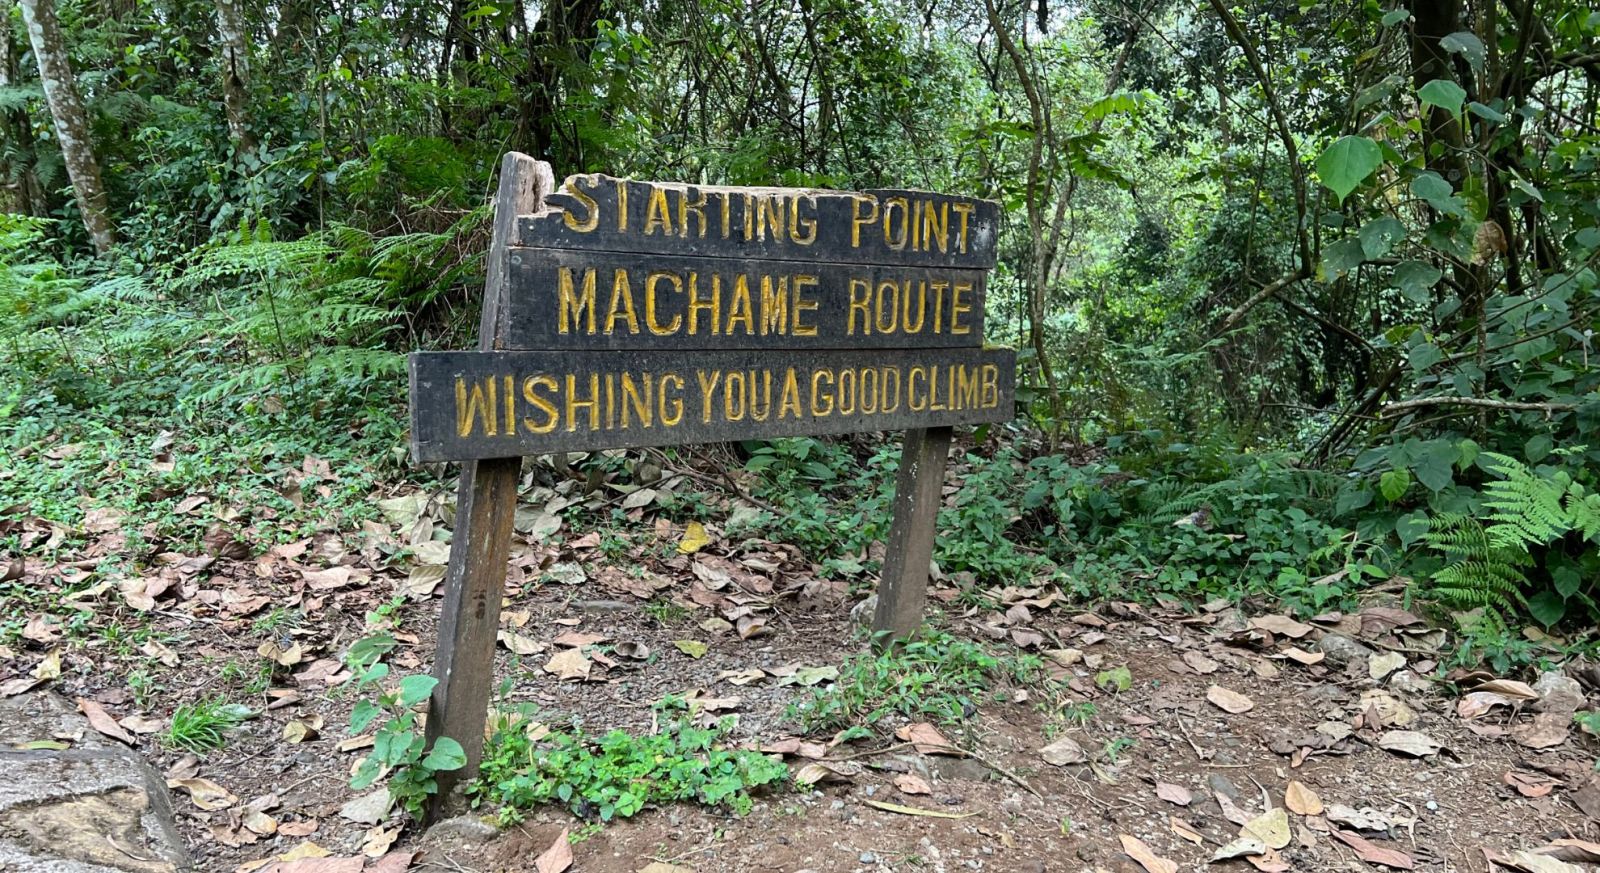 Machame Route,Kilimanjaro,Machame start